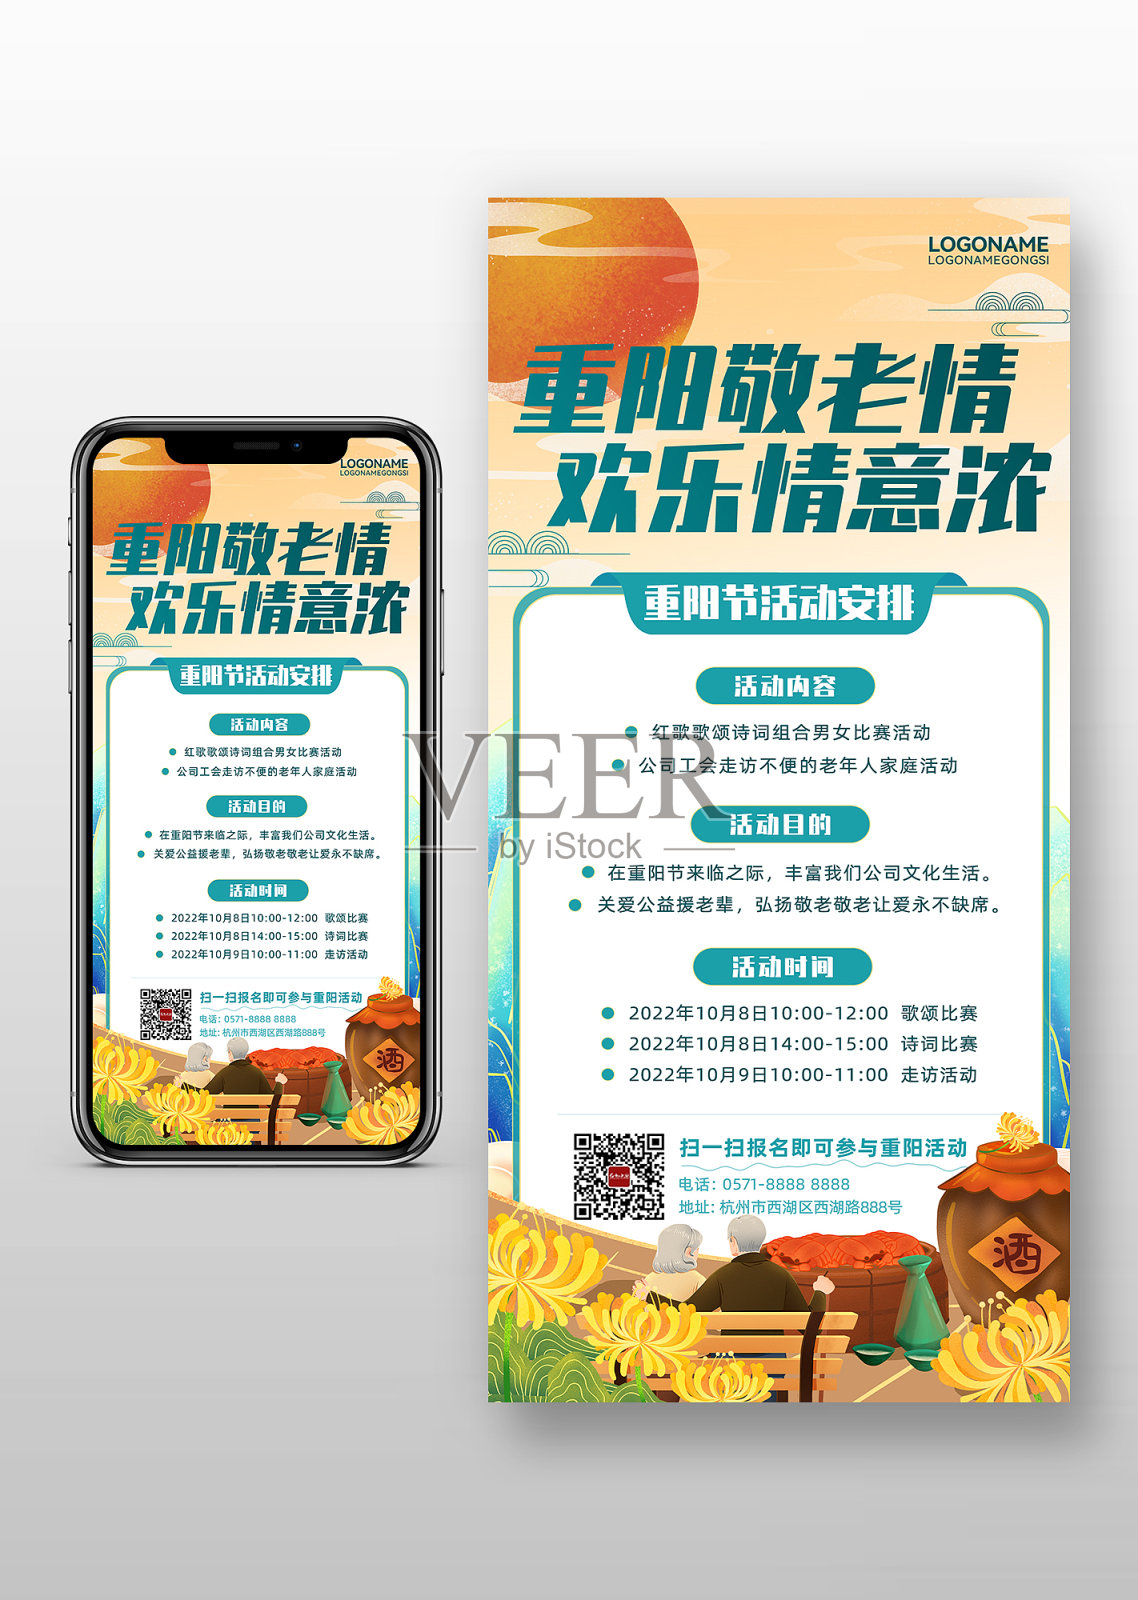 重阳敬老重阳节活动安排宣传手机海报设计模板素材